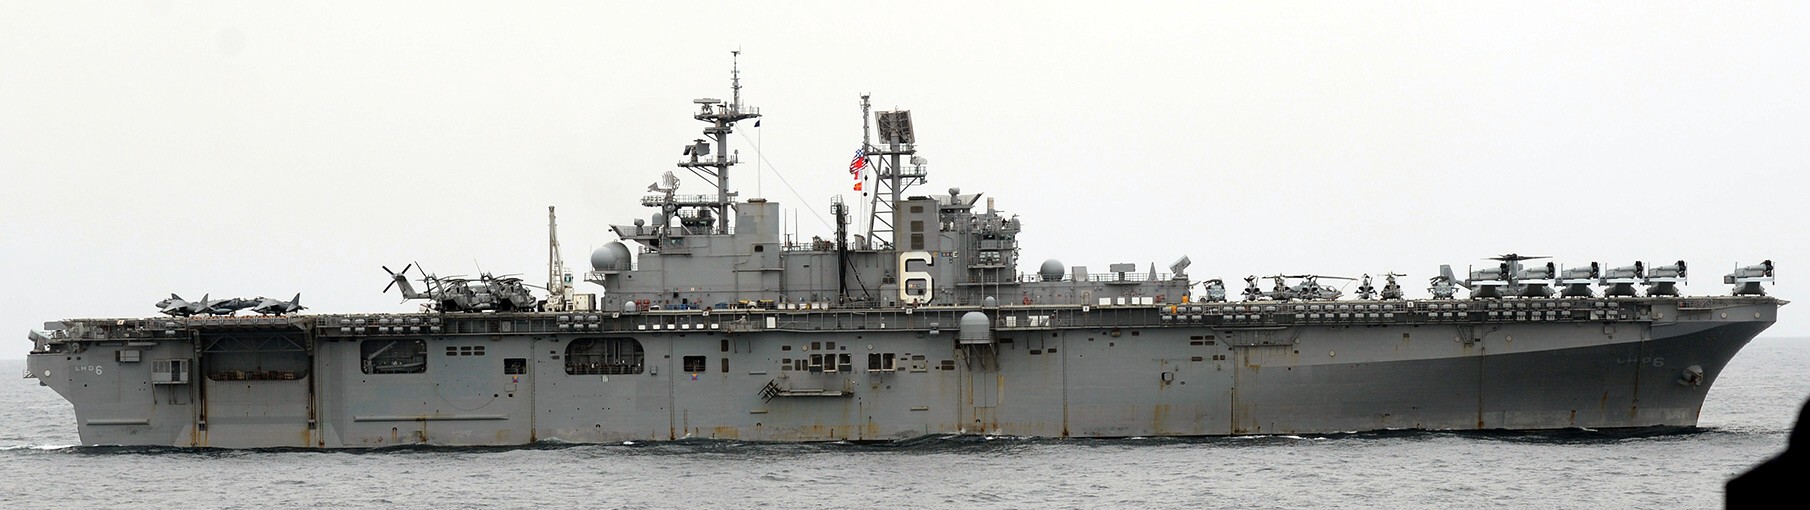 lhd-6 uss bonhomme richard amphibious assault ship landing helicopter dock wasp class 135